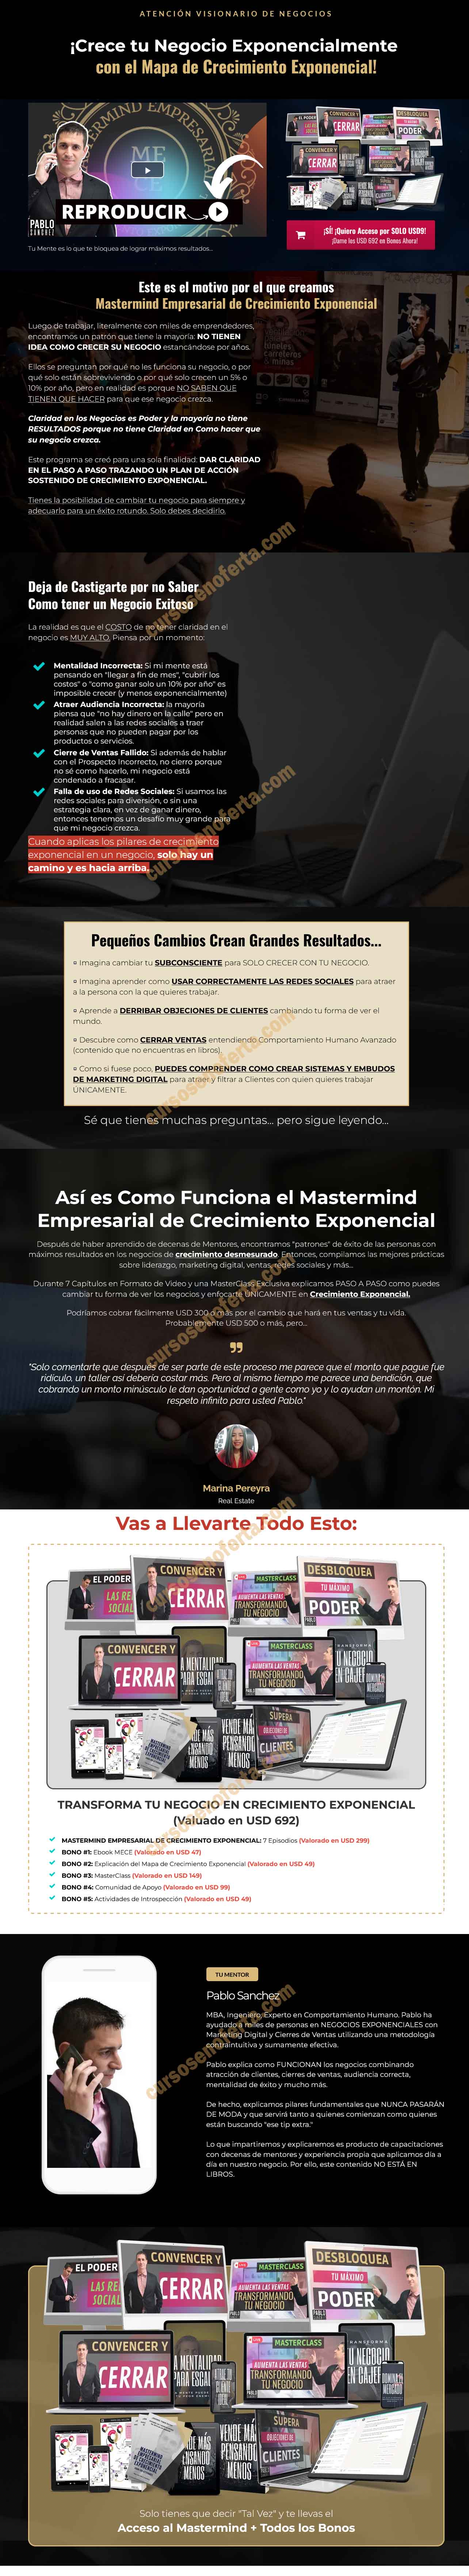 Mastermind Empresarial de Crecimiento Exponencial - Pablo Sánchez